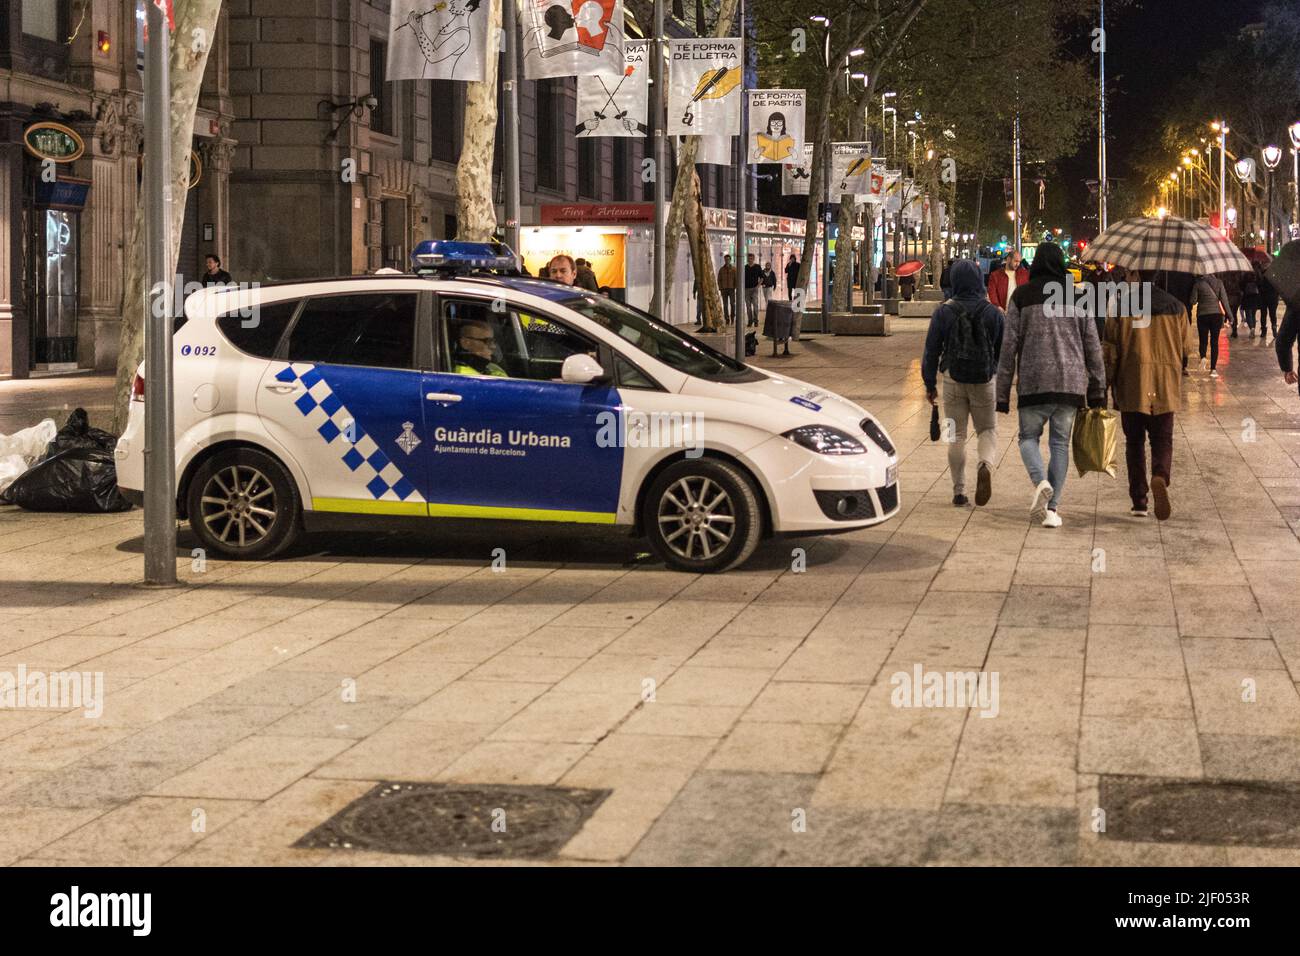 Voiture de police typique des rues de Barcelone: Siège Altea XL Banque D'Images